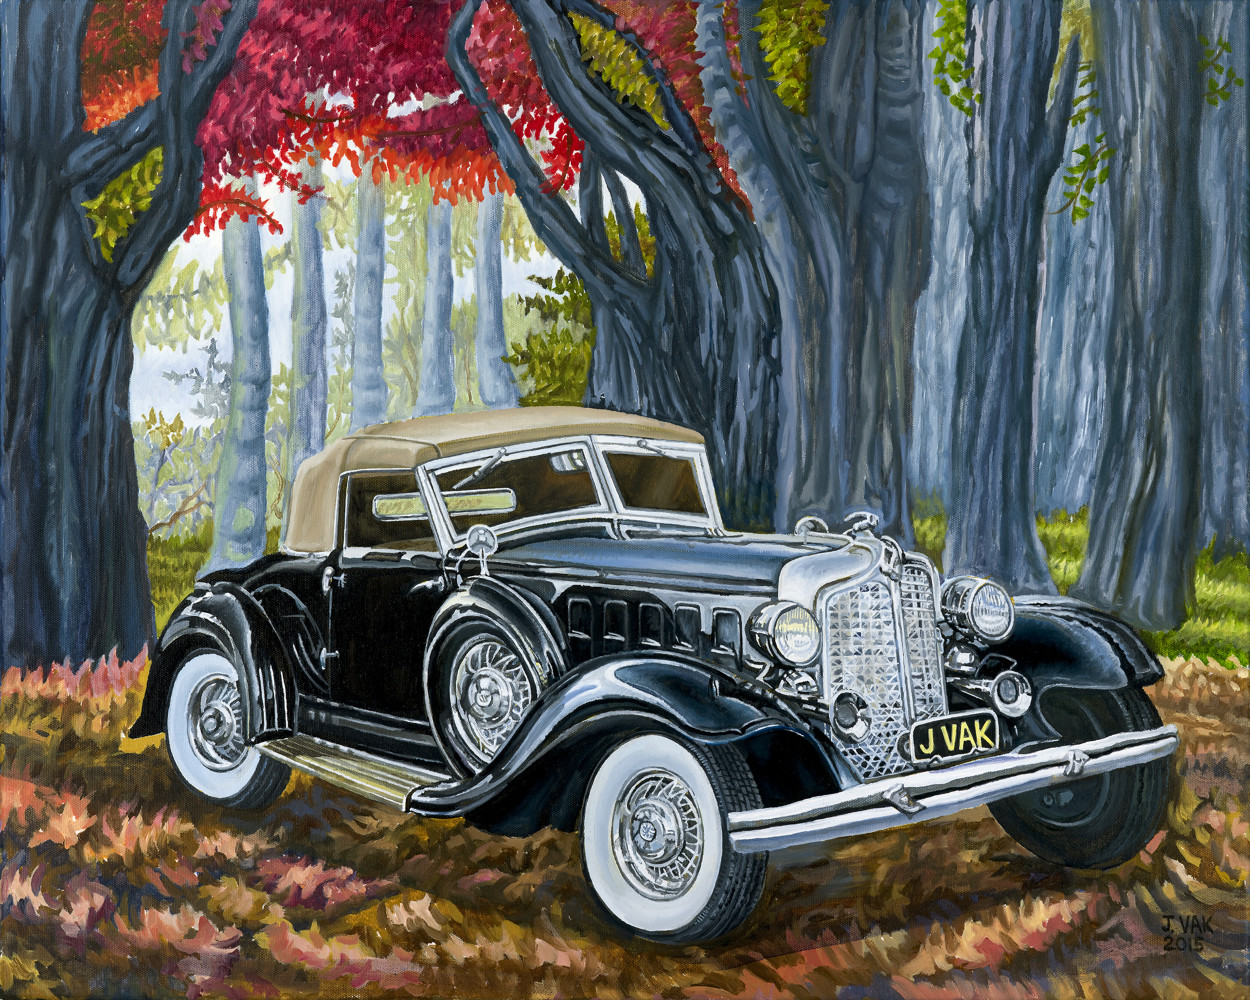 1932 Chrysler Imperial LeBaron
        24 X 30 Original Oil
                 $2800
                   2015